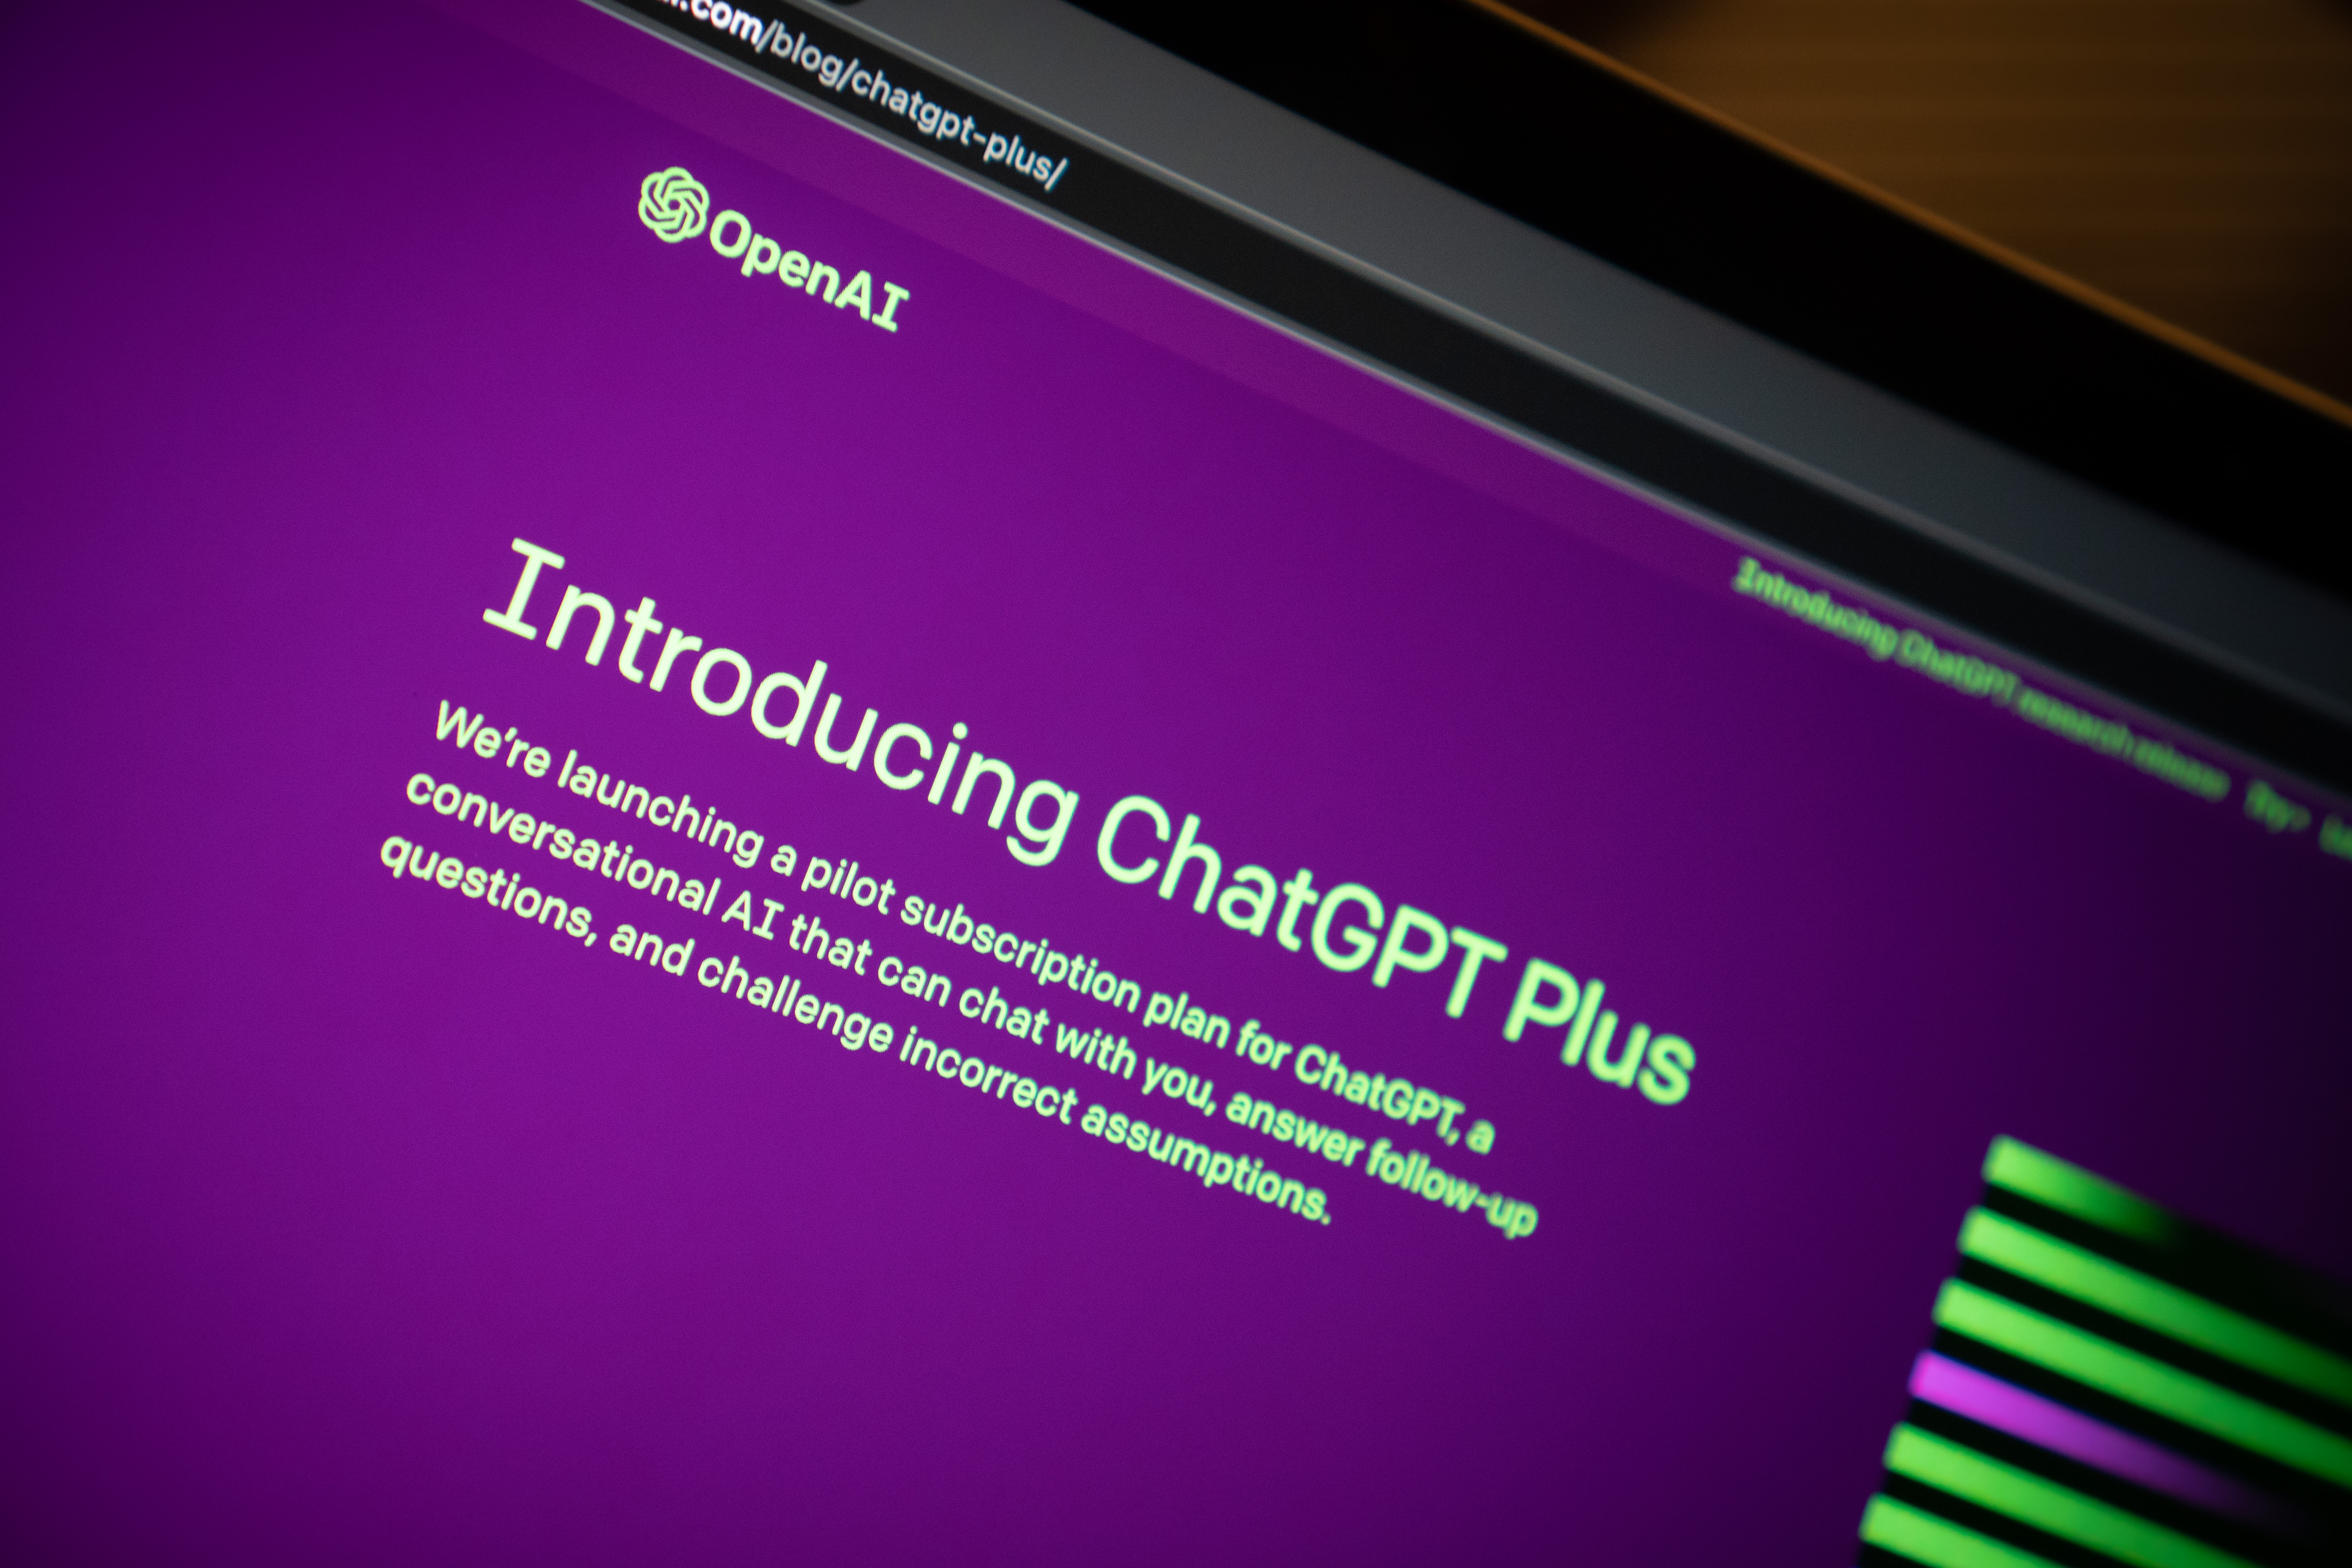 Подписчики ChatGPT Plus получили возможность загружать файлы и работать с ними